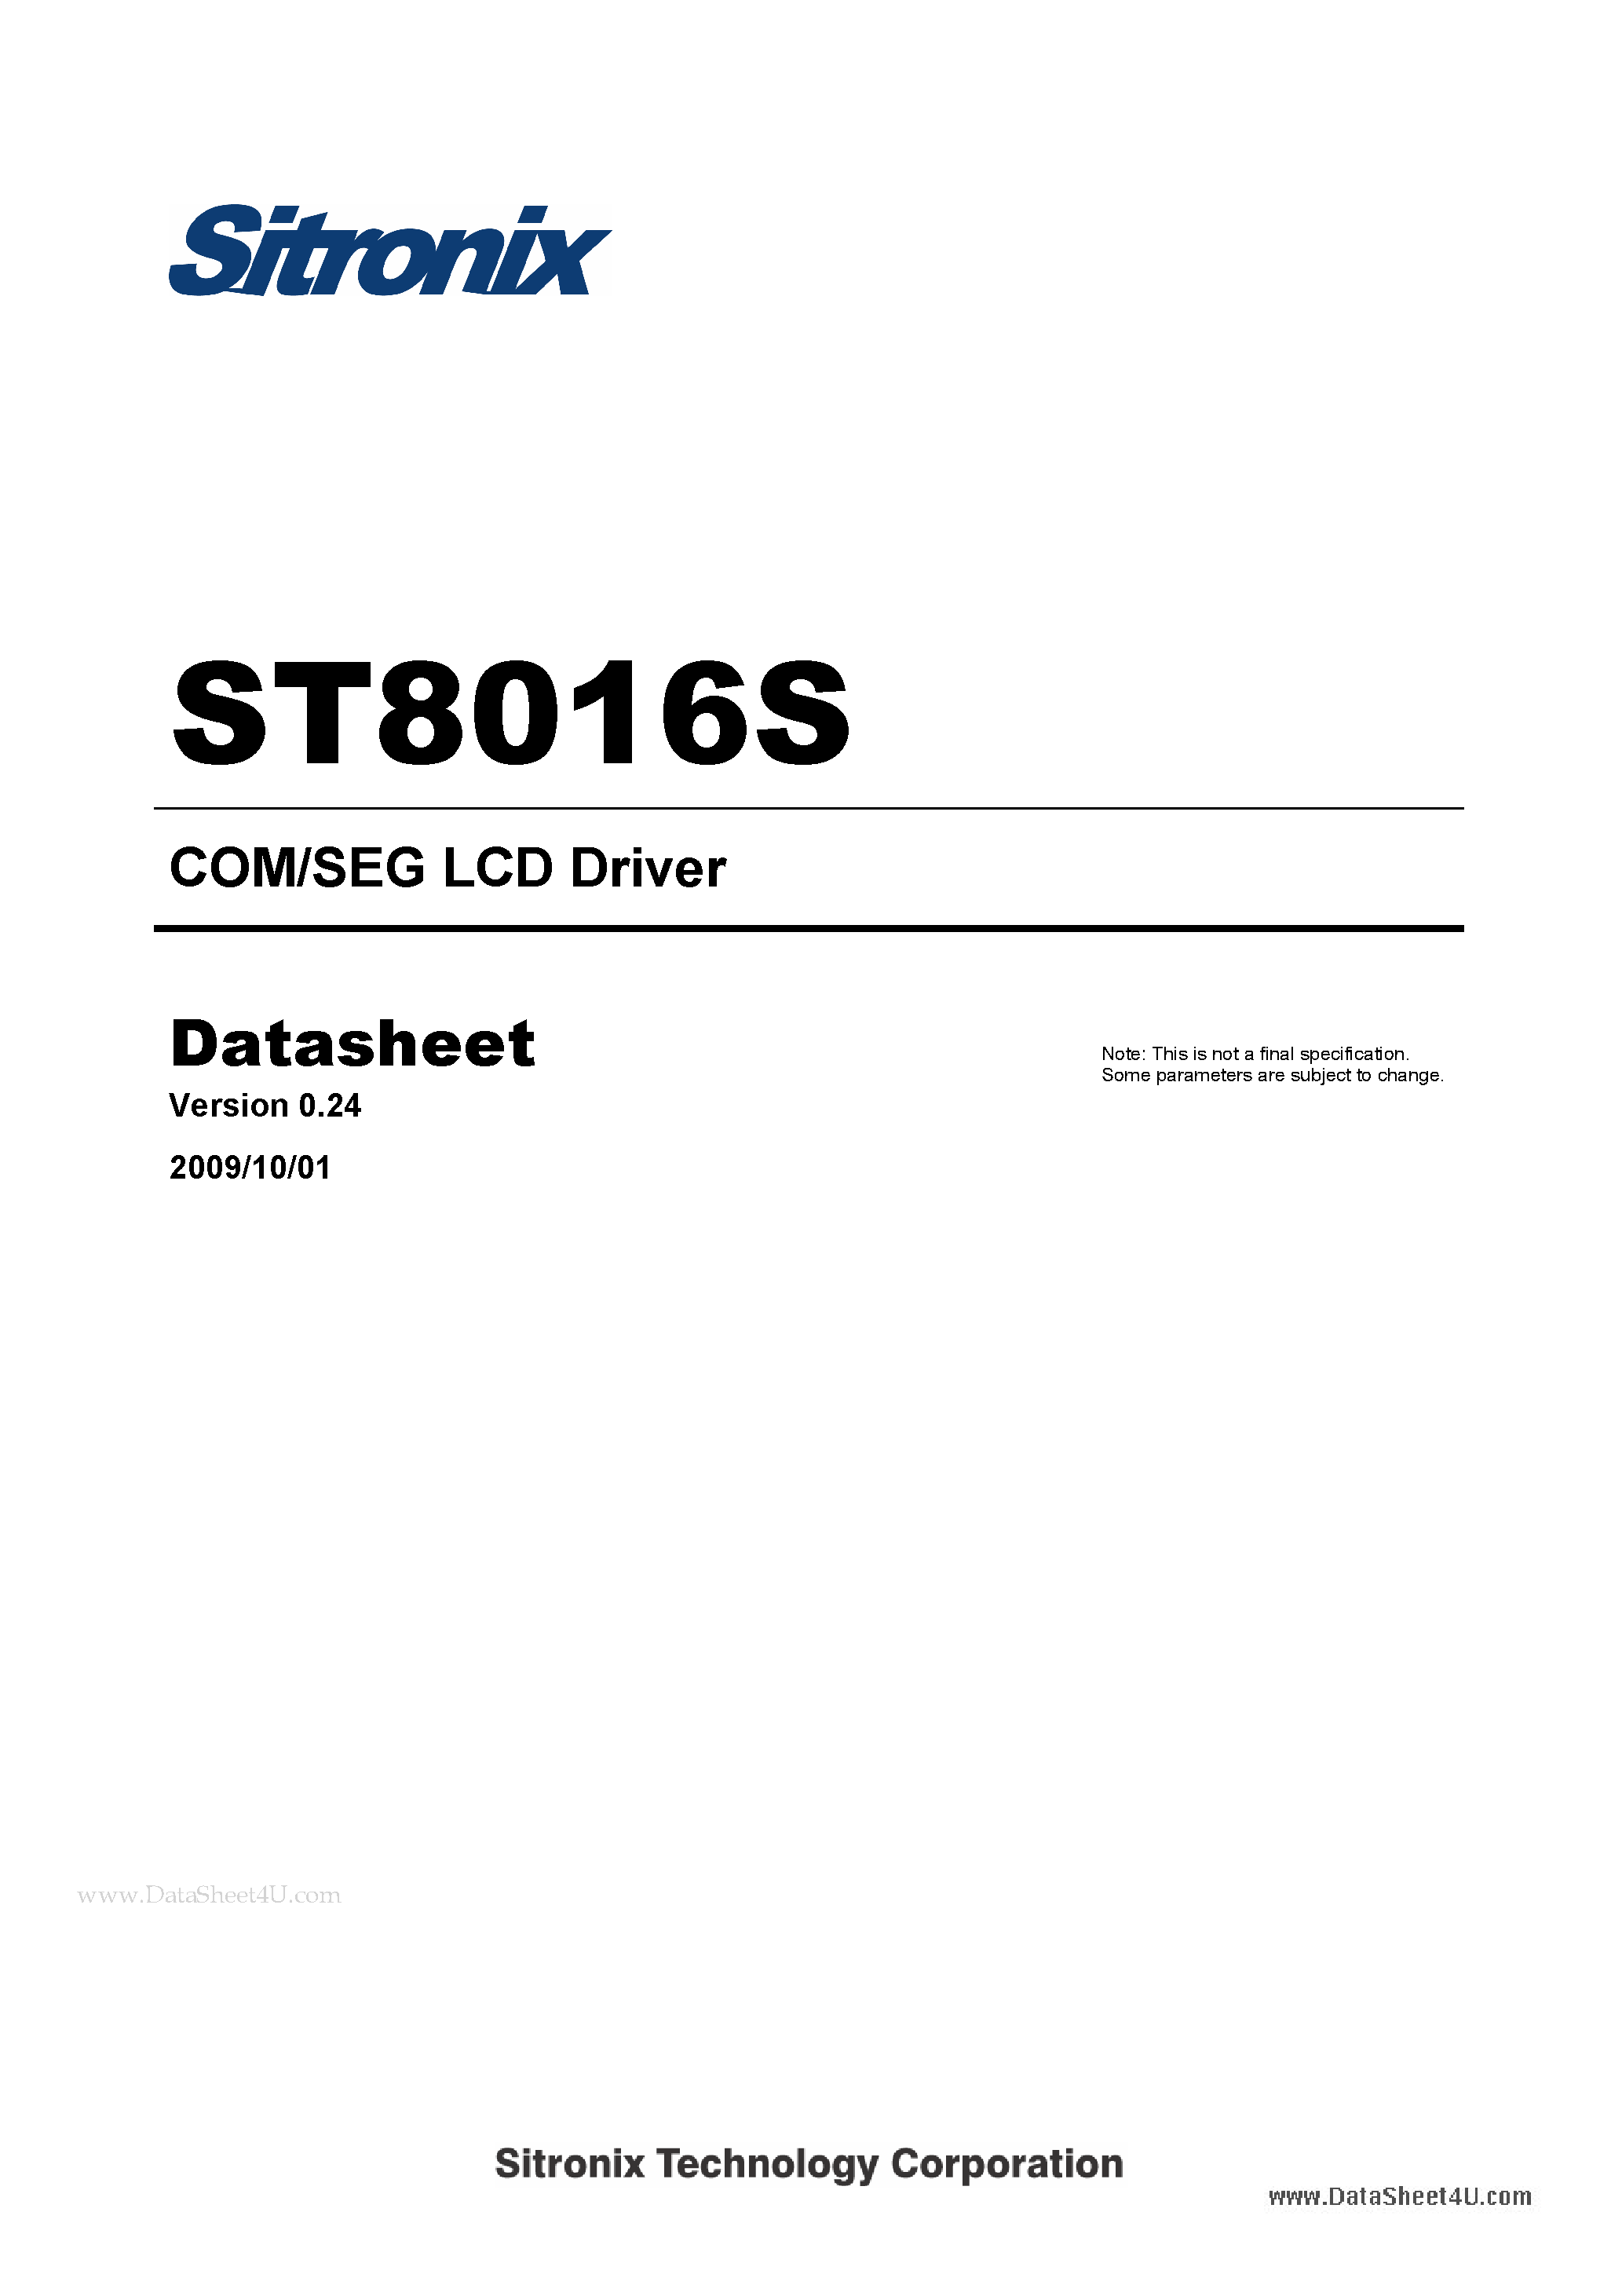 Даташит ST8016S - COM/SEG LCD Driver страница 1